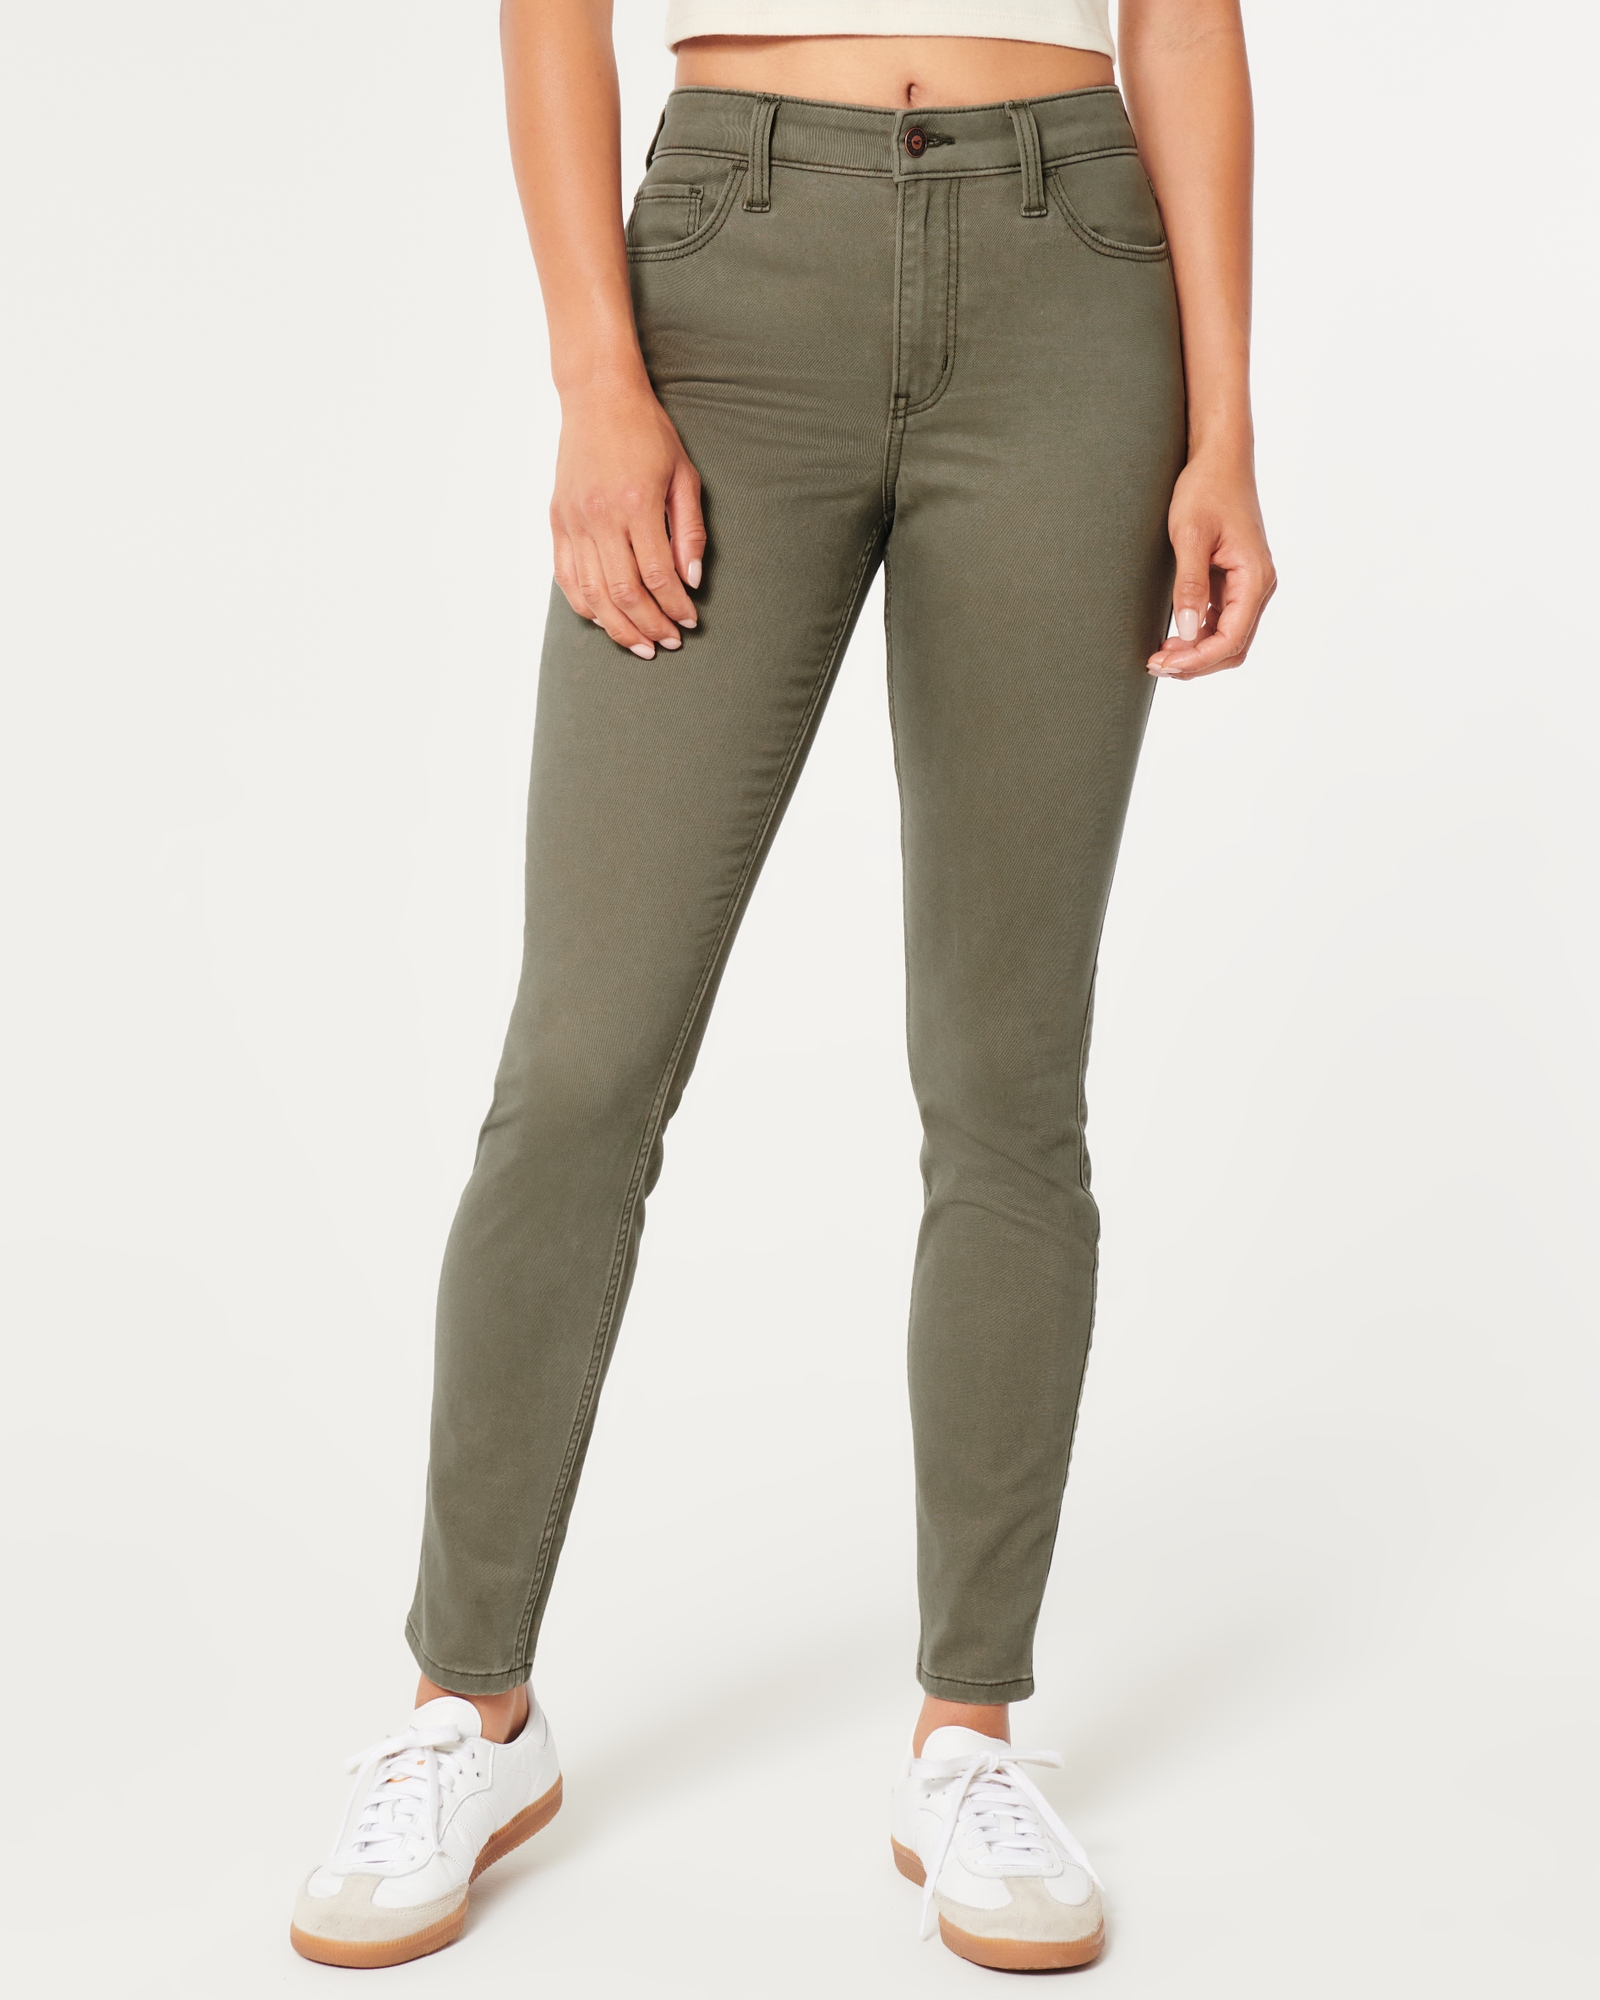 Kensie Jeans High Rise Slim Fit Crop Olive Green Pants